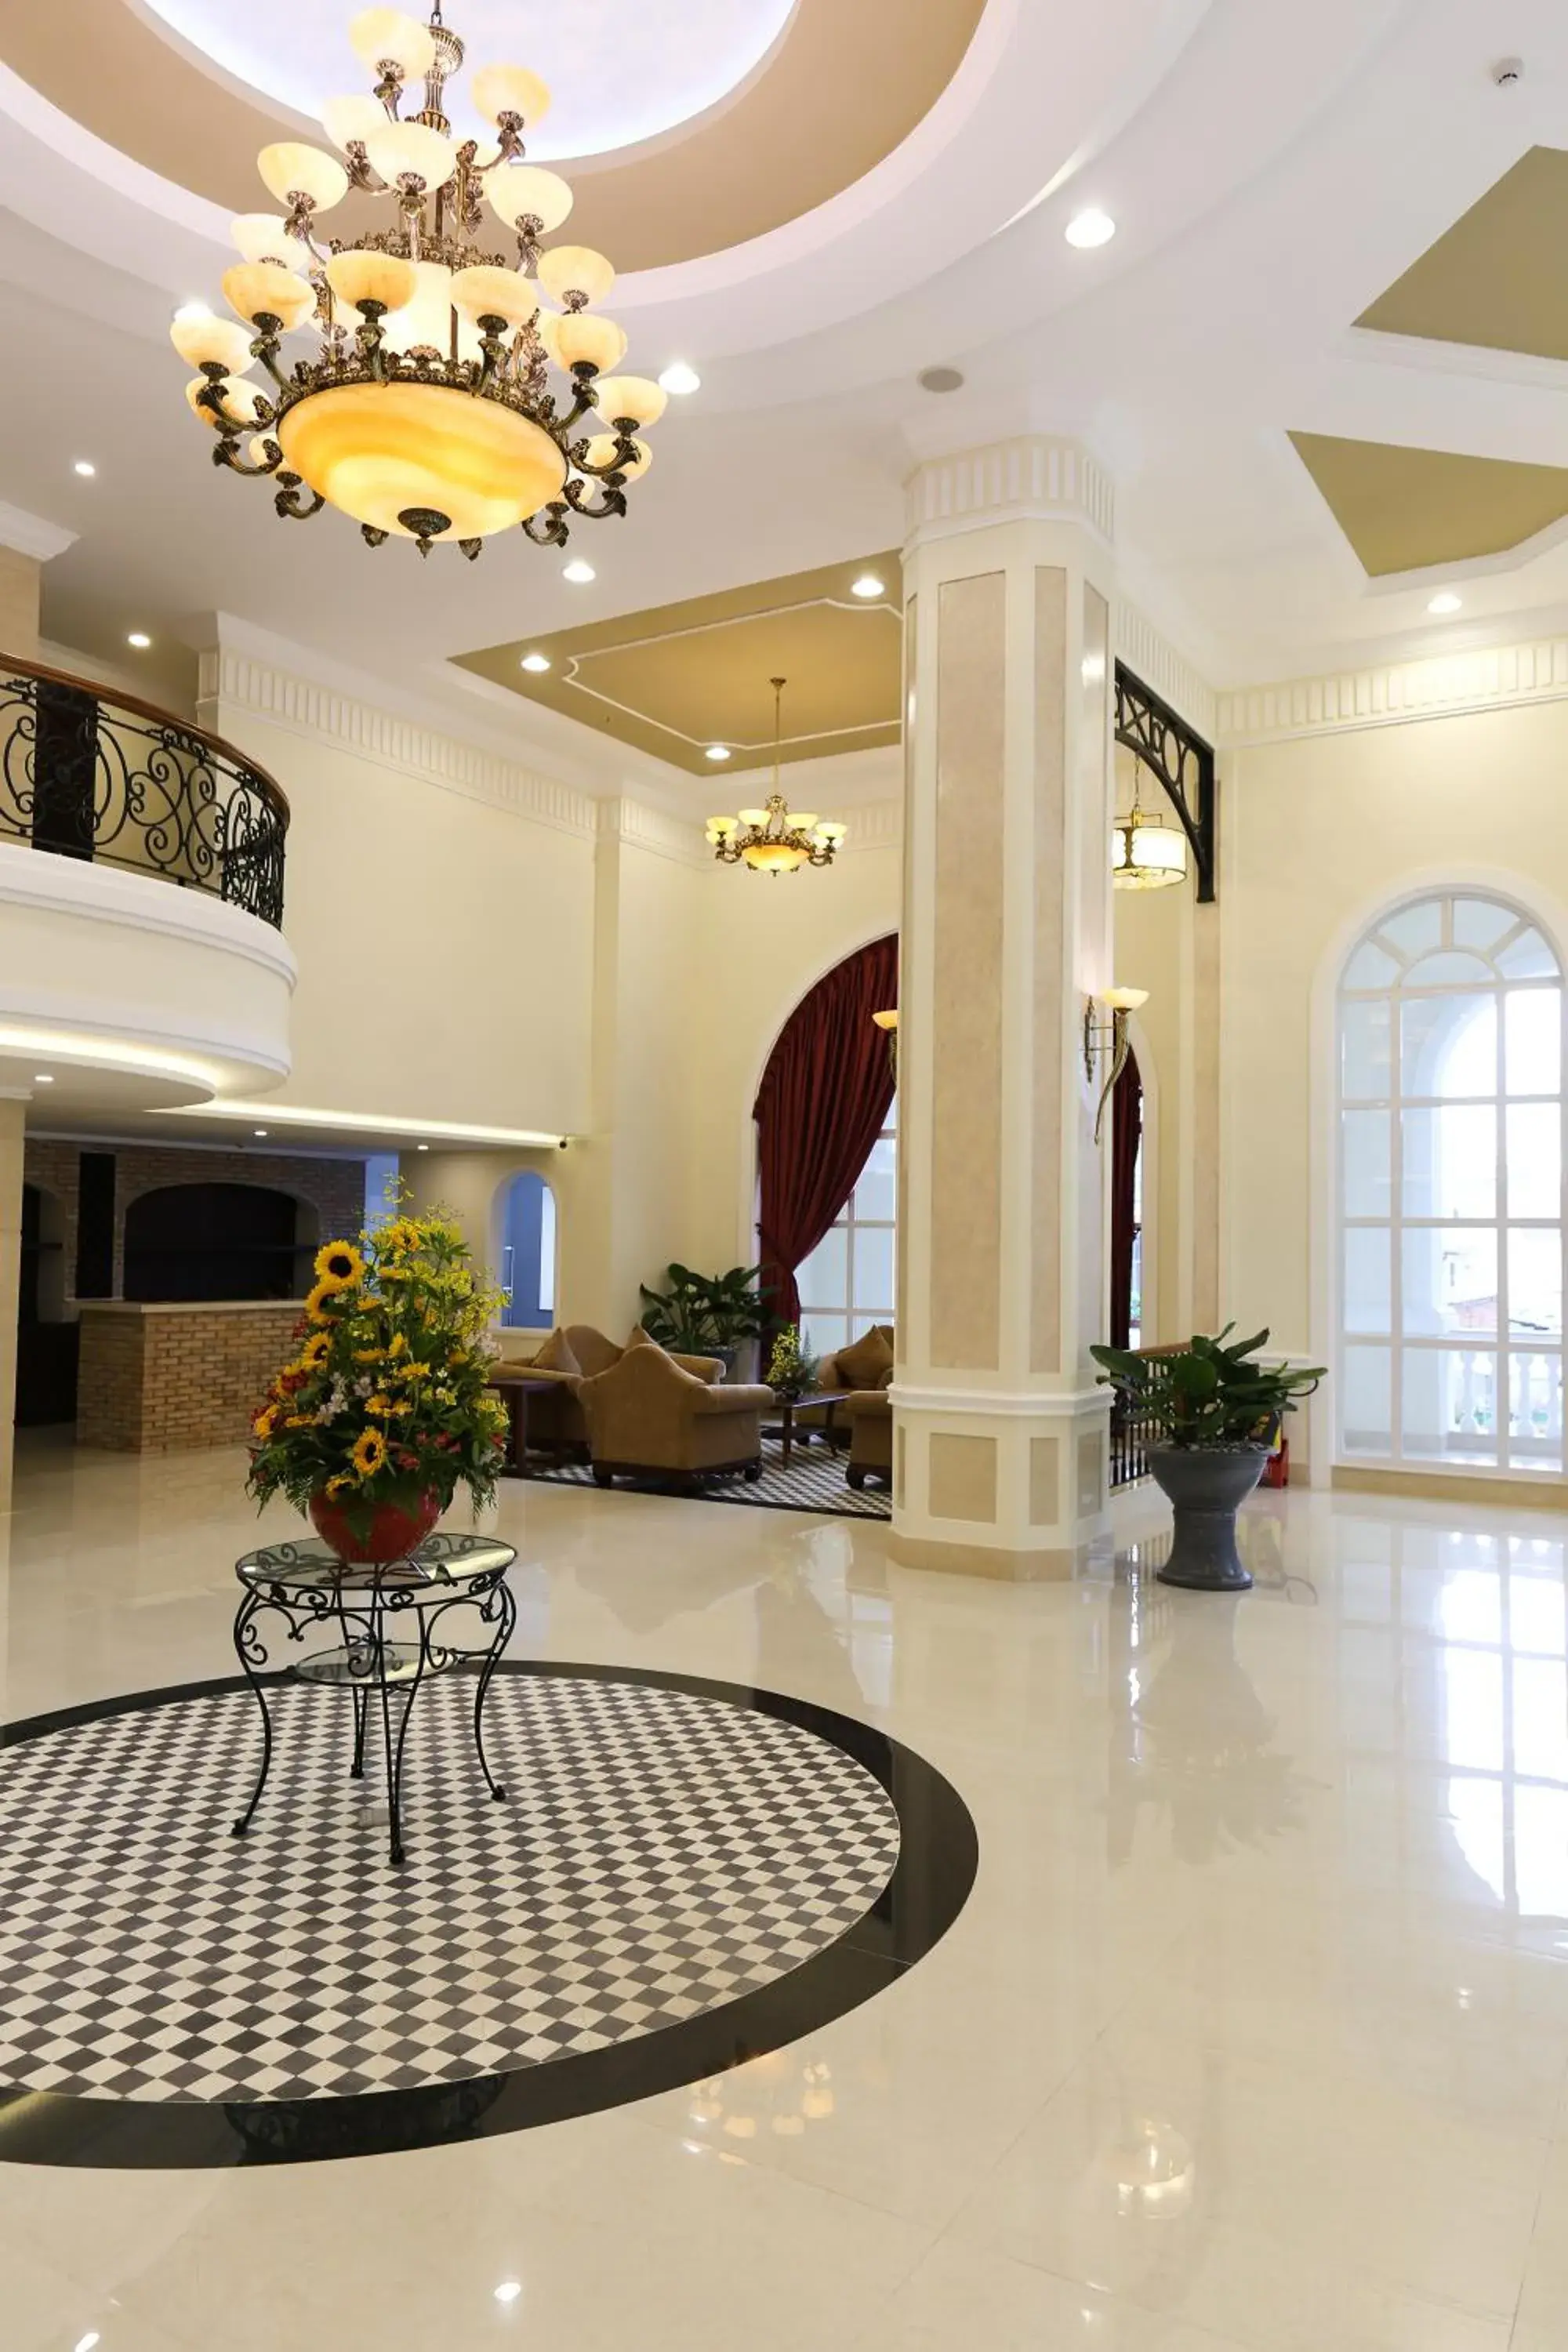 Lobby or reception, Lobby/Reception in Iris Dalat Hotel